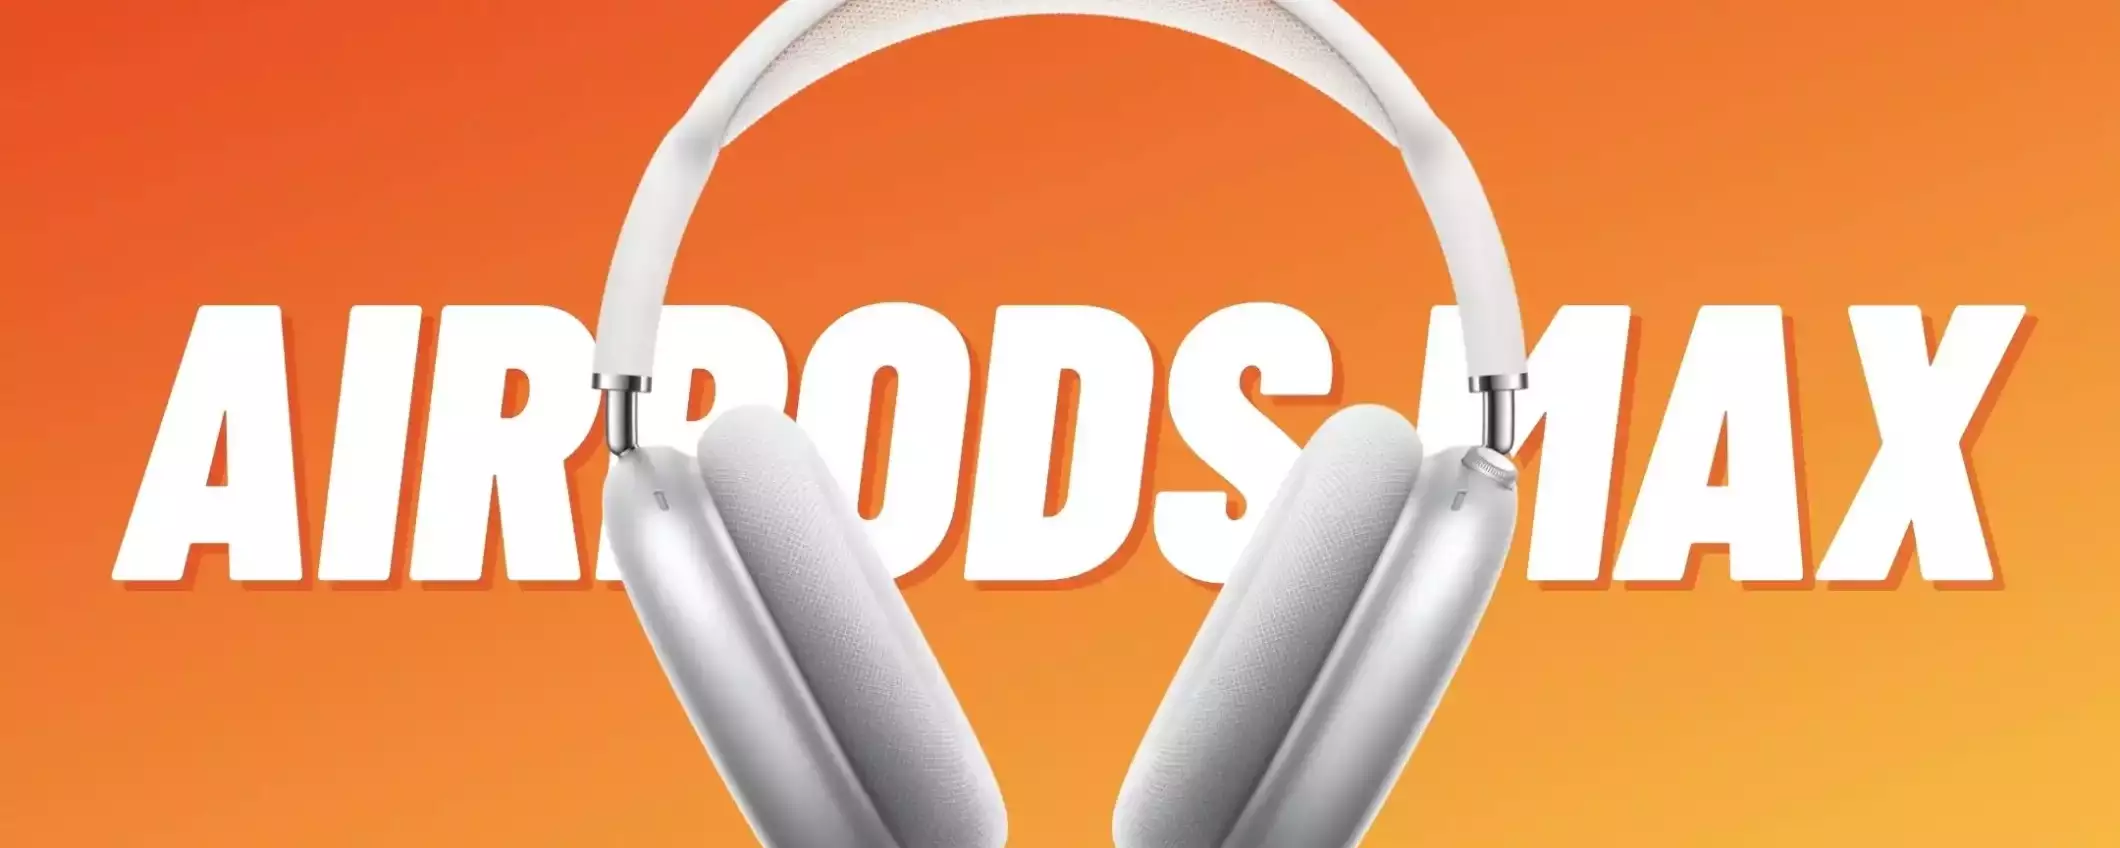 AirPods Max: le migliori cuffie over-ear per chi ha un iPhone